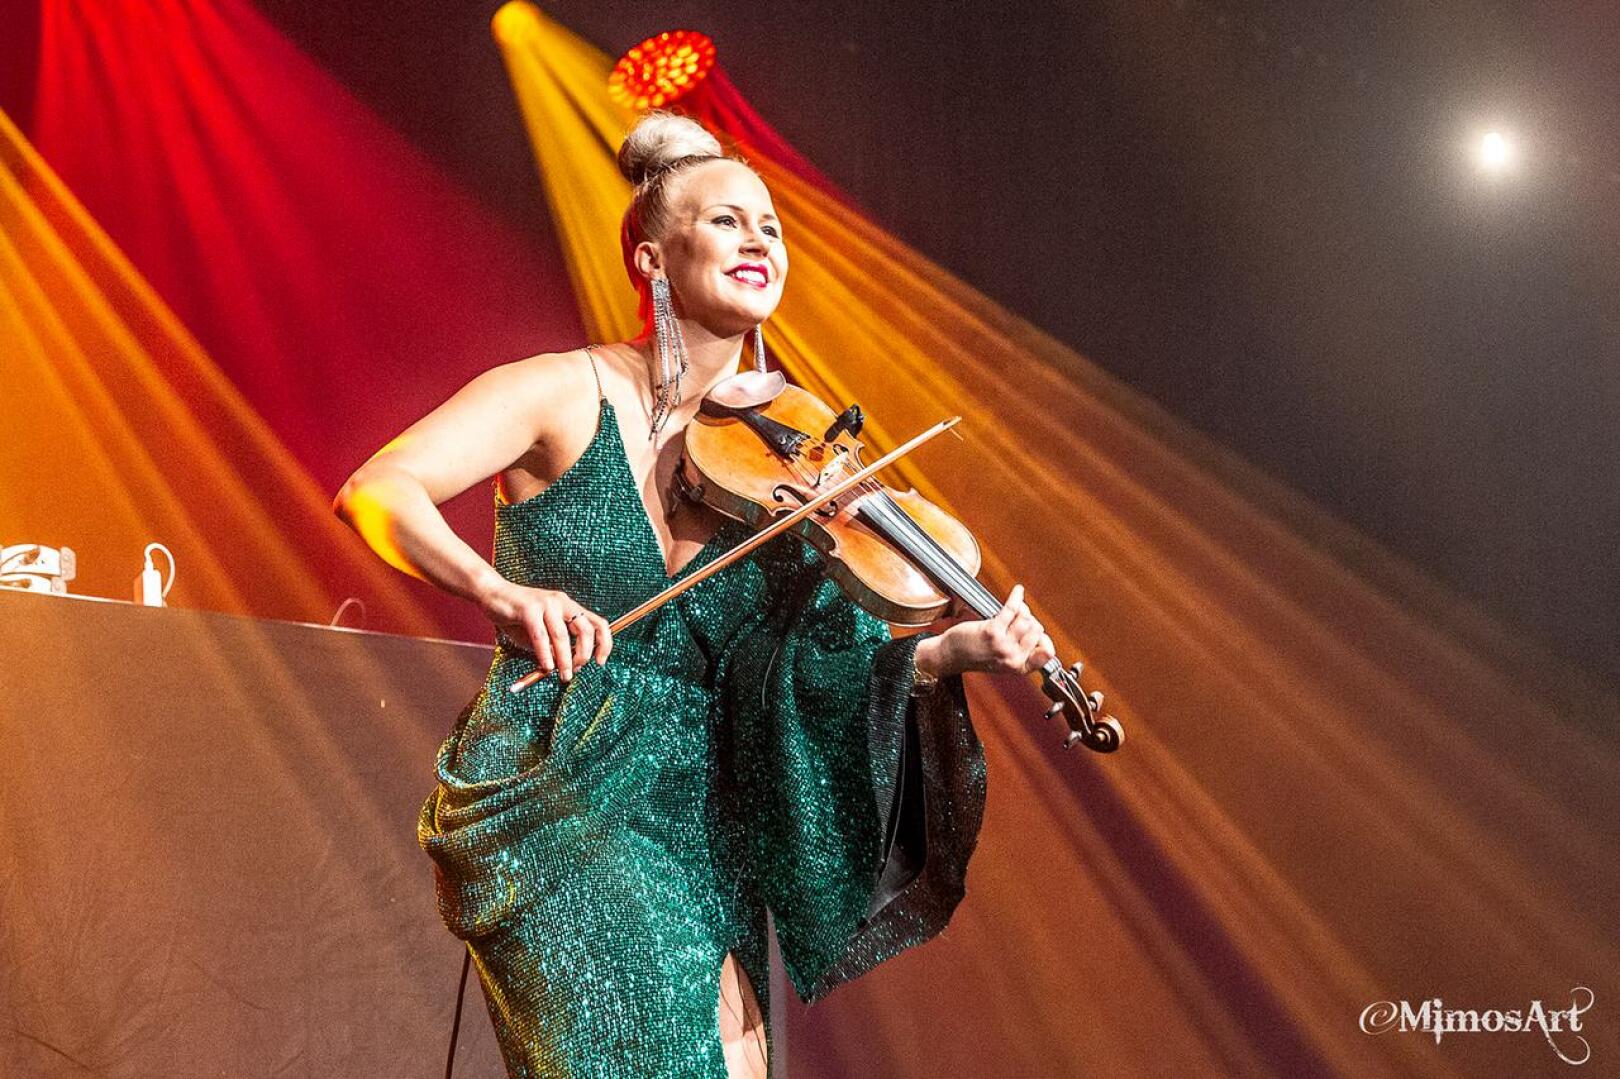 Elisa Järvelän keikkaa voi katsoa lauantai-iltana omalta kotisohvalta käsin, kun veteliläislähtöinen viulisti nousee lavalle Tullipakkahuoneella. 